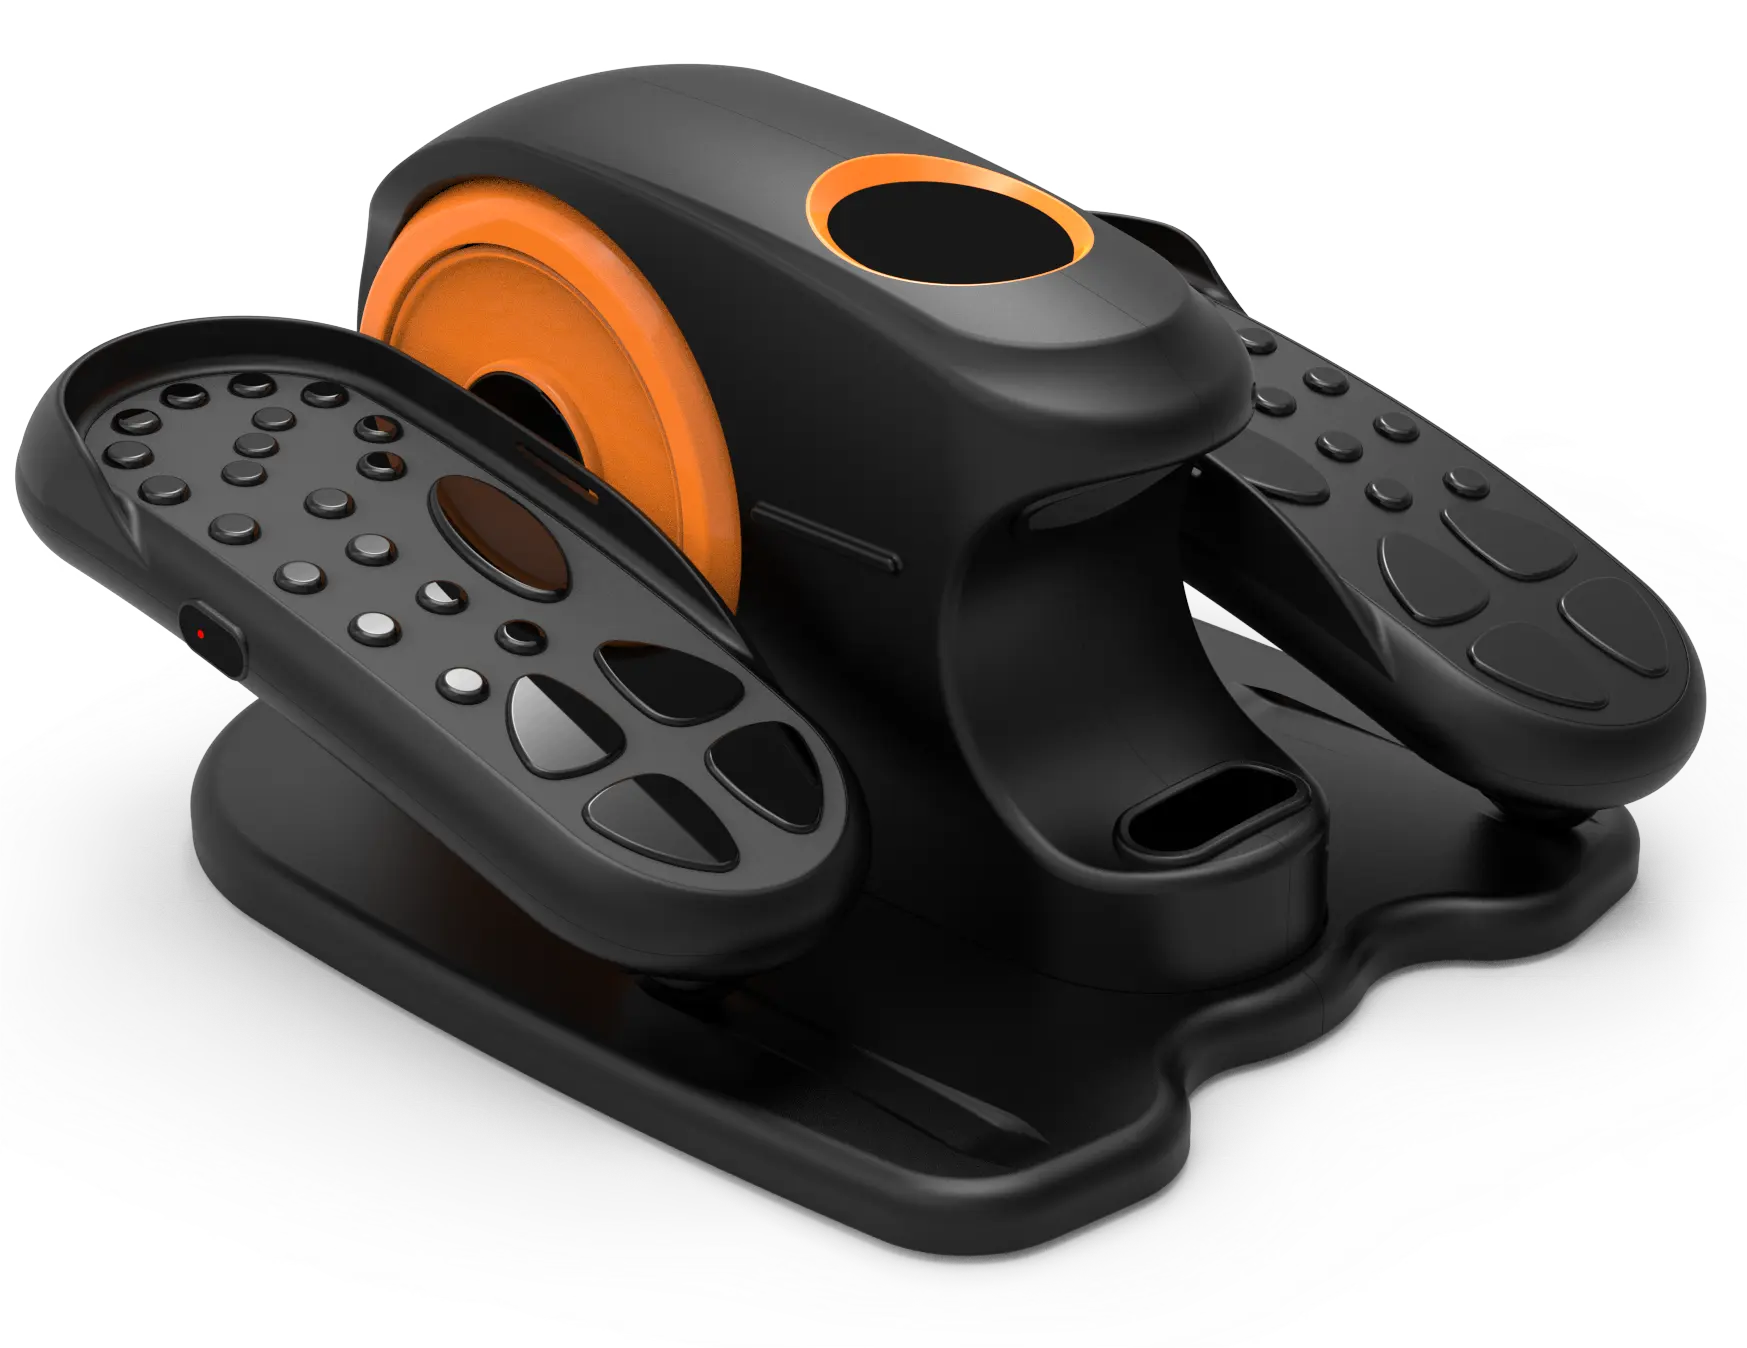 Nuova macchina ellittica elettrica Leg Trainer tapis roulant per uso domestico Mini cyclette macchina da passeggio per Fitness